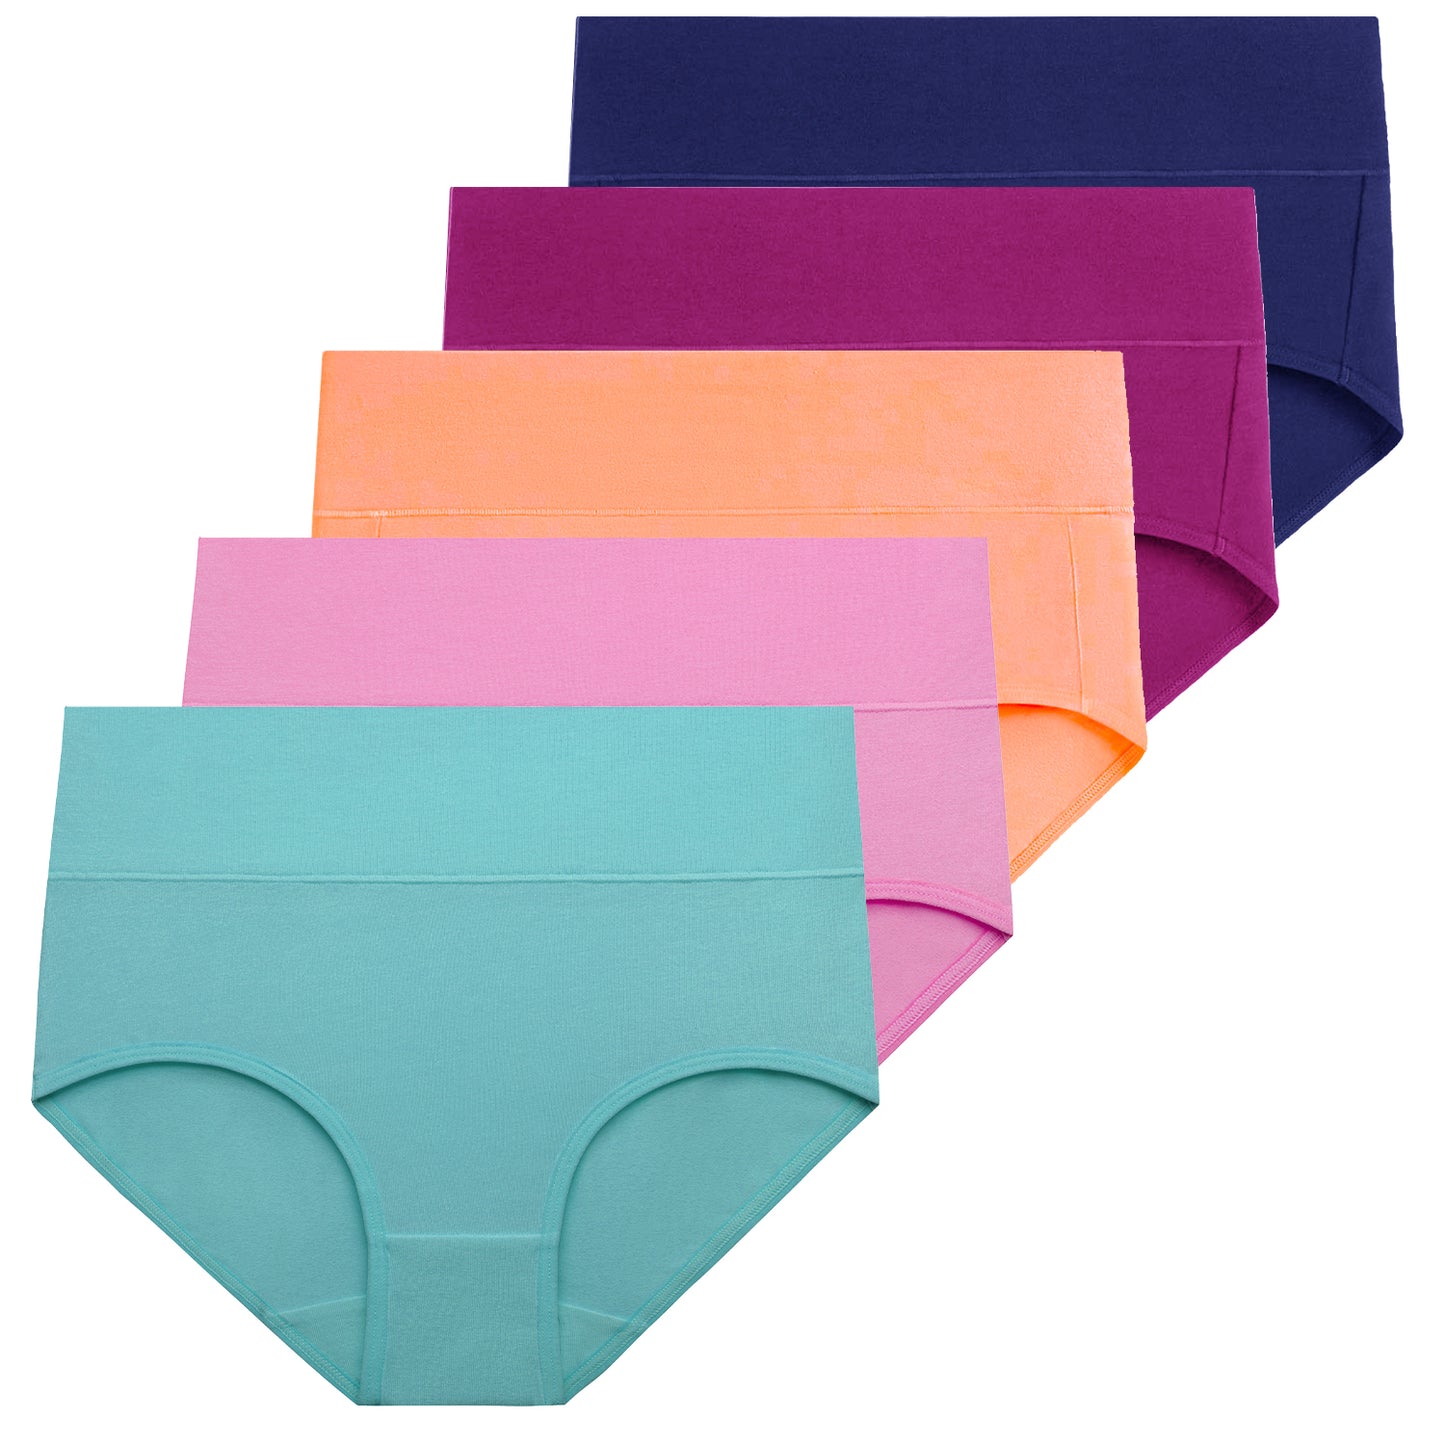 MAOQIN Women's Underwear Cotton Plus Size Panties High Waist Briefs Size  9-12